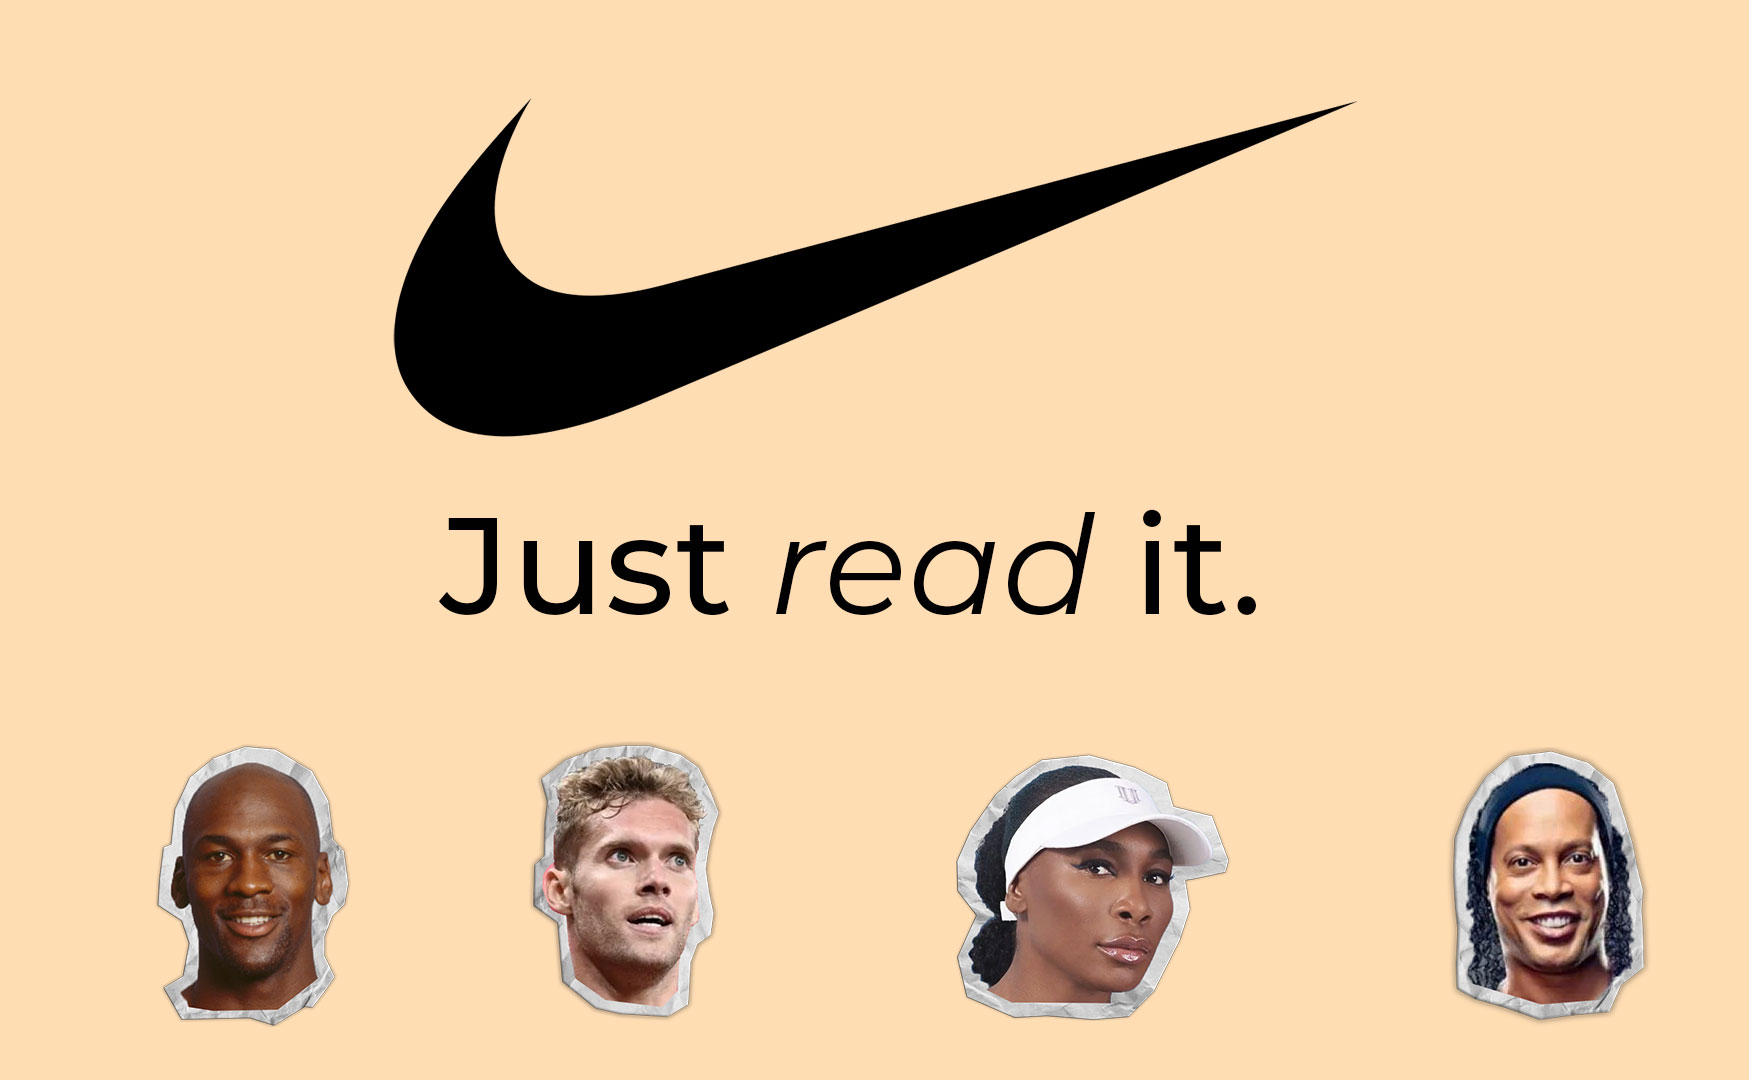 Nike baisse à Wall Street après une publicité polémique